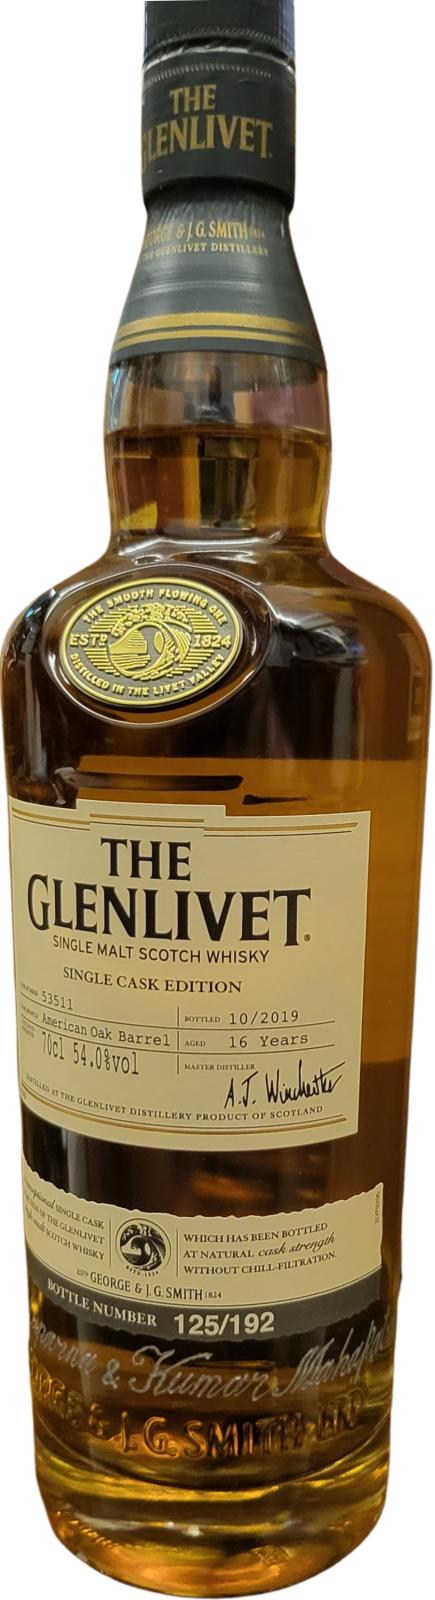 Glenlivet 16yo Single Cask Edition American Oak Barrel 54% 700ml